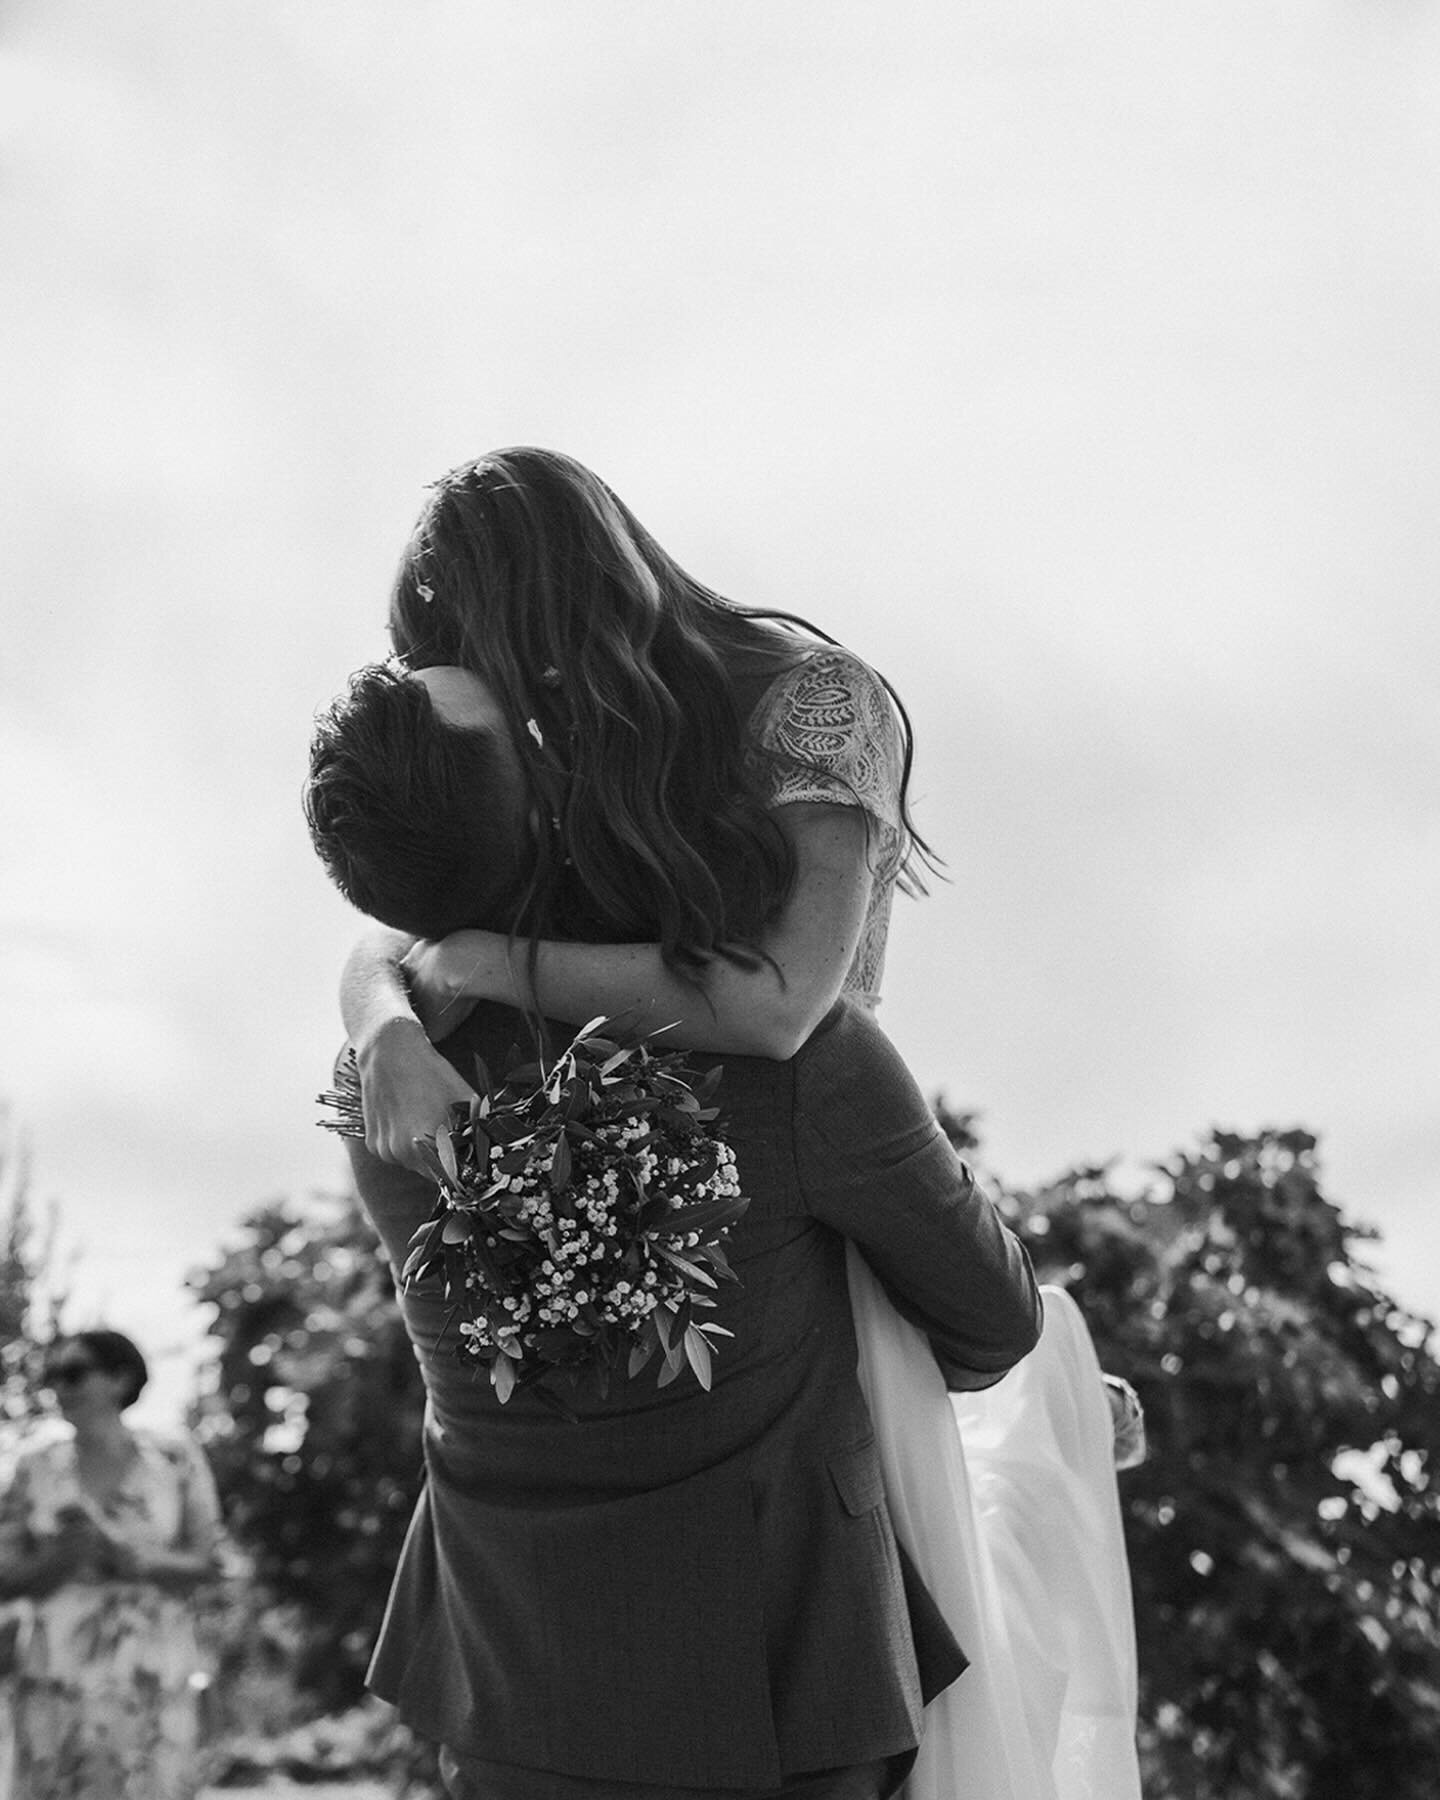 Rekla sta JA, dvignu jo je v zrak in sprehodila sta se med svati, ki so vanju metali rožne listke&hellip;res je blo kjut! 🌸🤍

#porocnifotograf #porocnafotografija #slovenianwedding #slovenianweddingphotographer